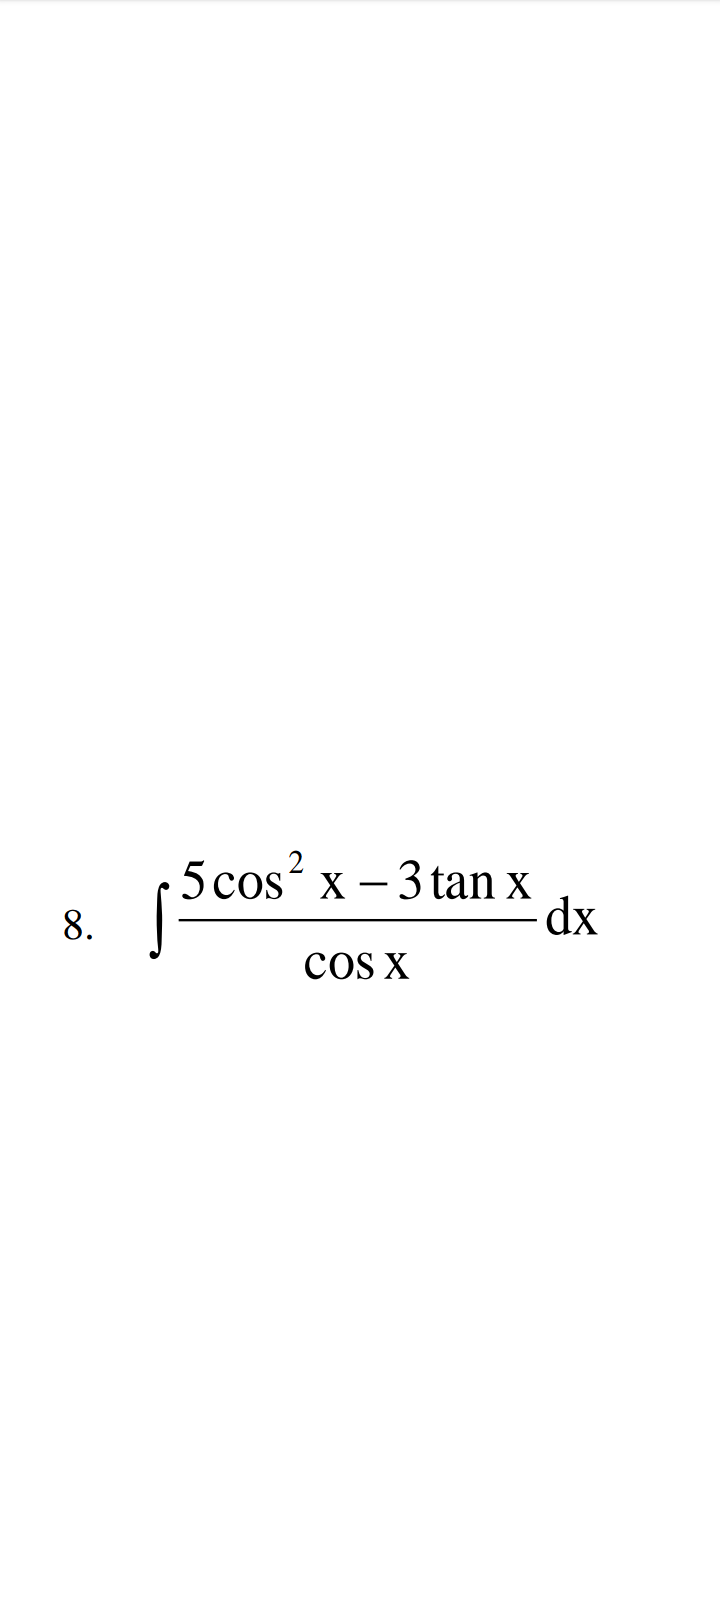 8.
5 cos²x - 3tan x
COS X
dx